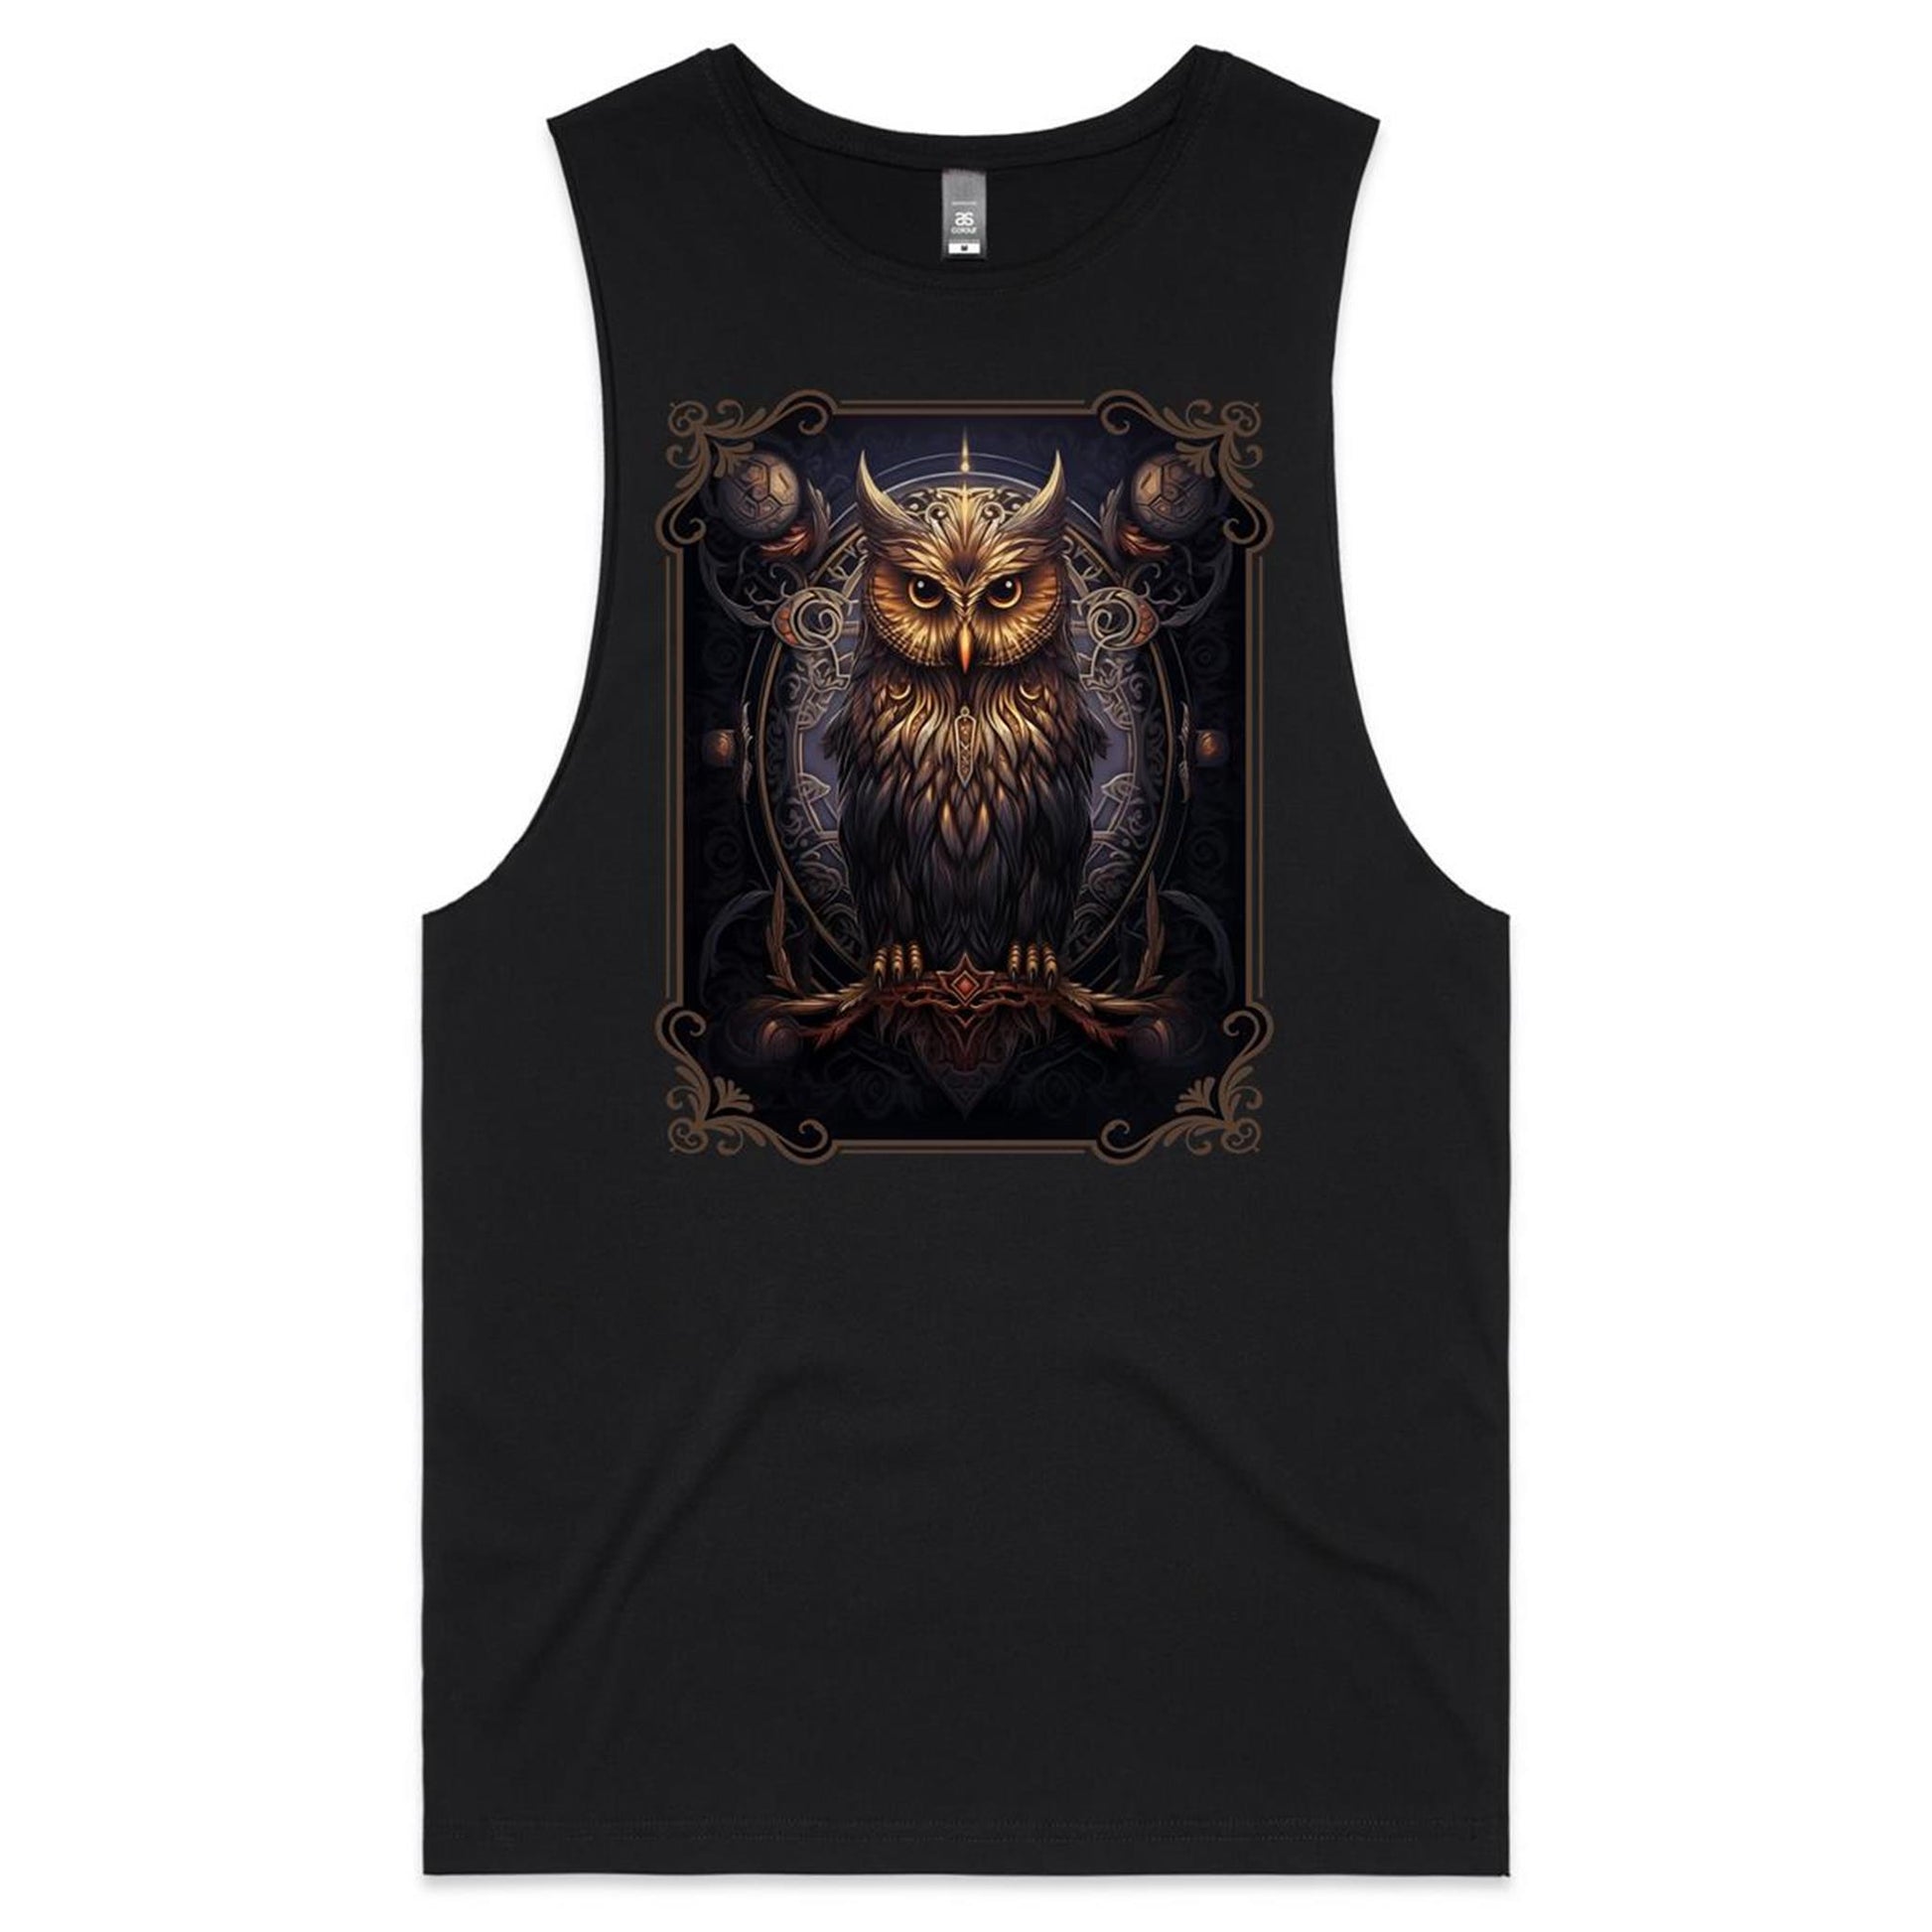 Owl muscle Tshirt.